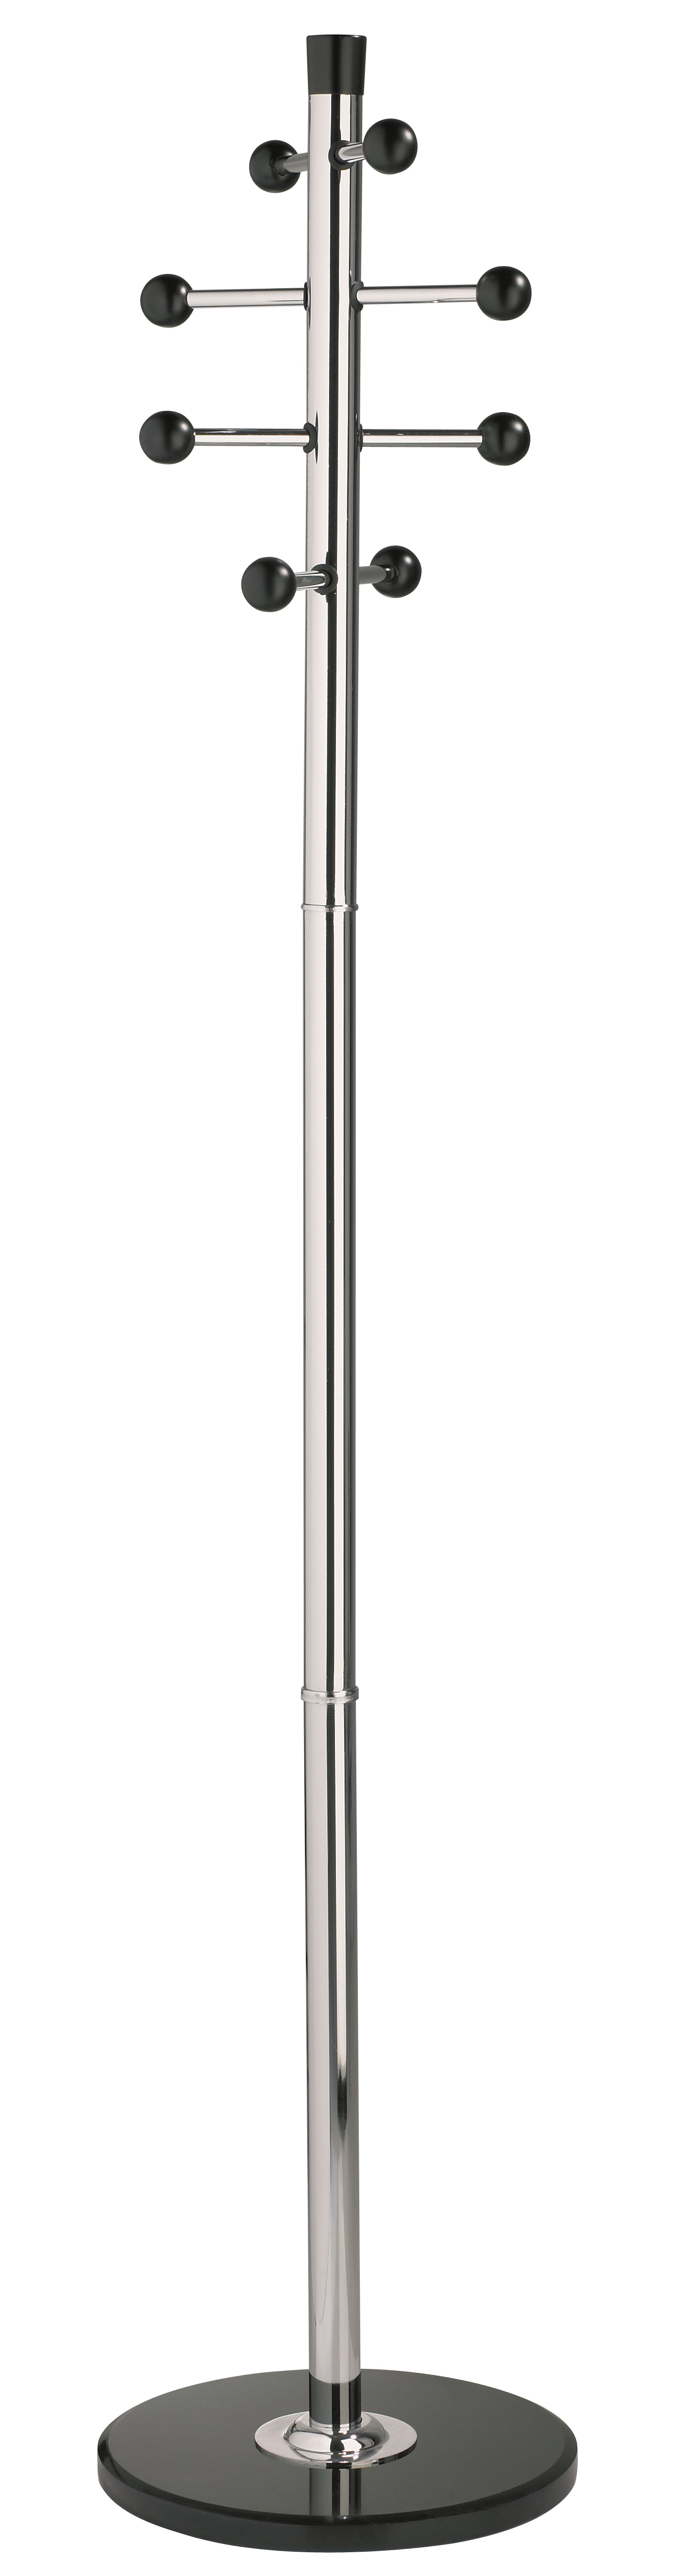 Cuier metalic argintiu ALCO, 175/38cm, 8 agatarori metalice cu accesorii din lemn, suport umbrele